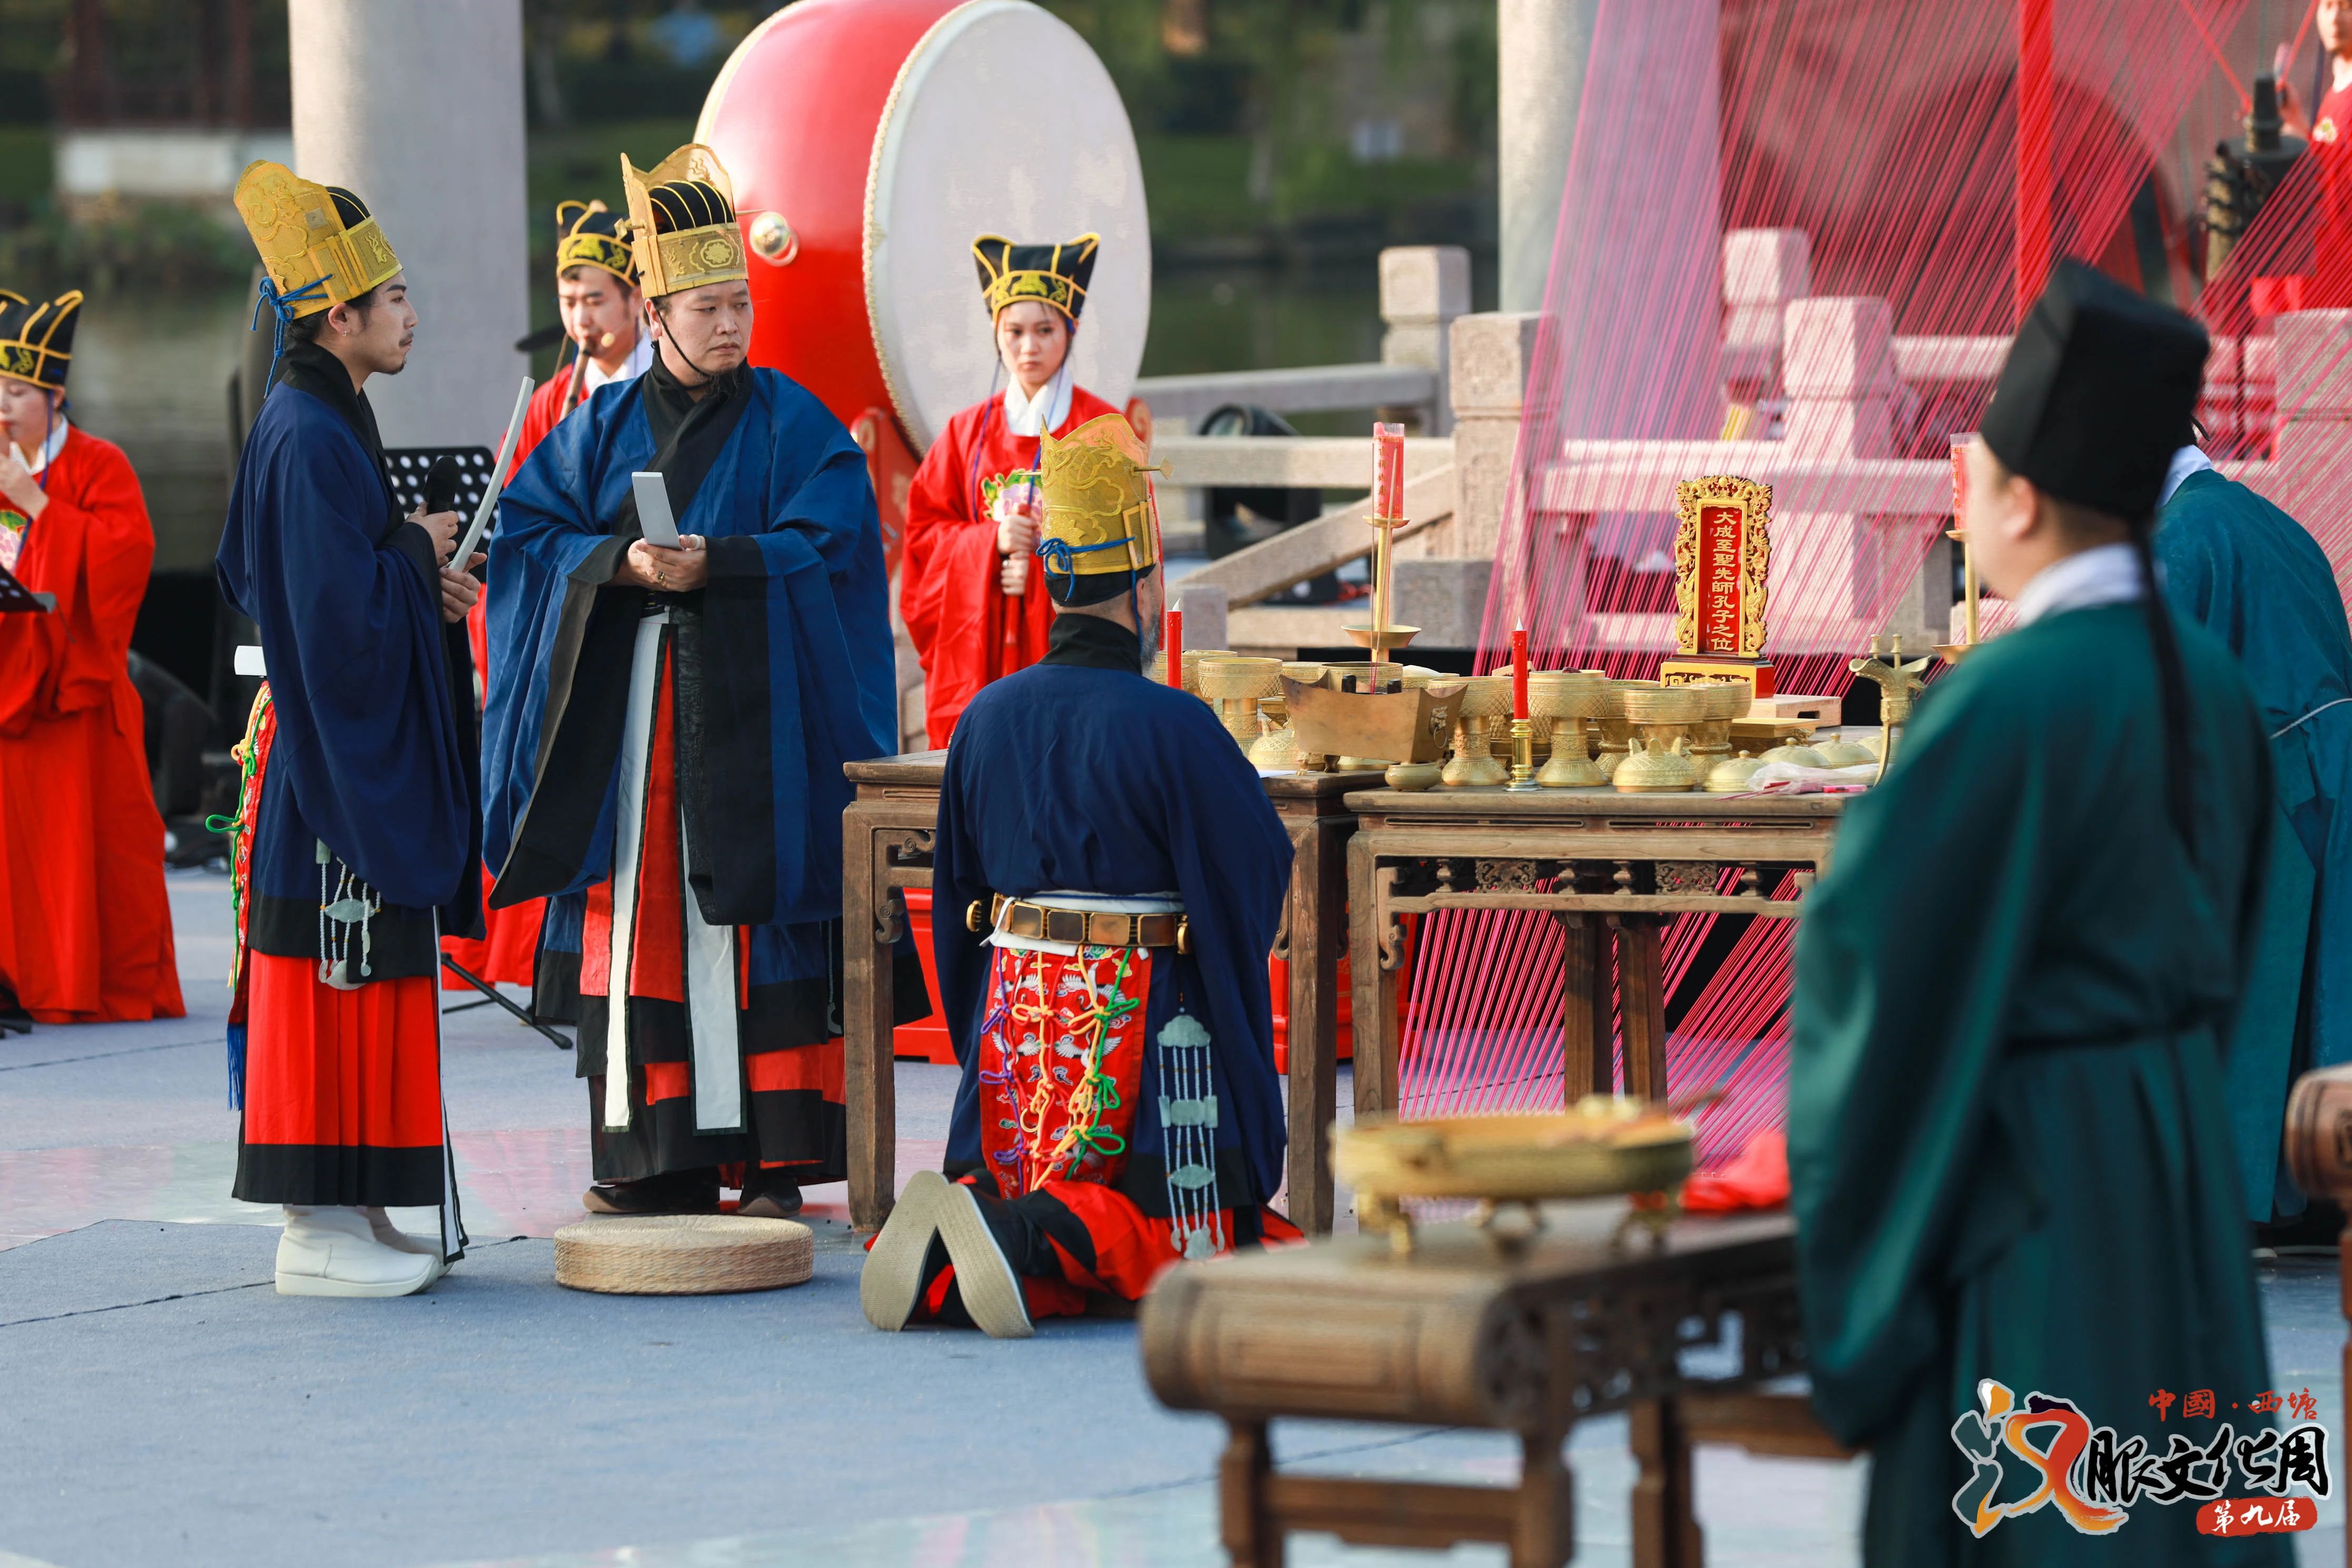 那些你不得不知道的中国传统礼仪习俗-搜狐